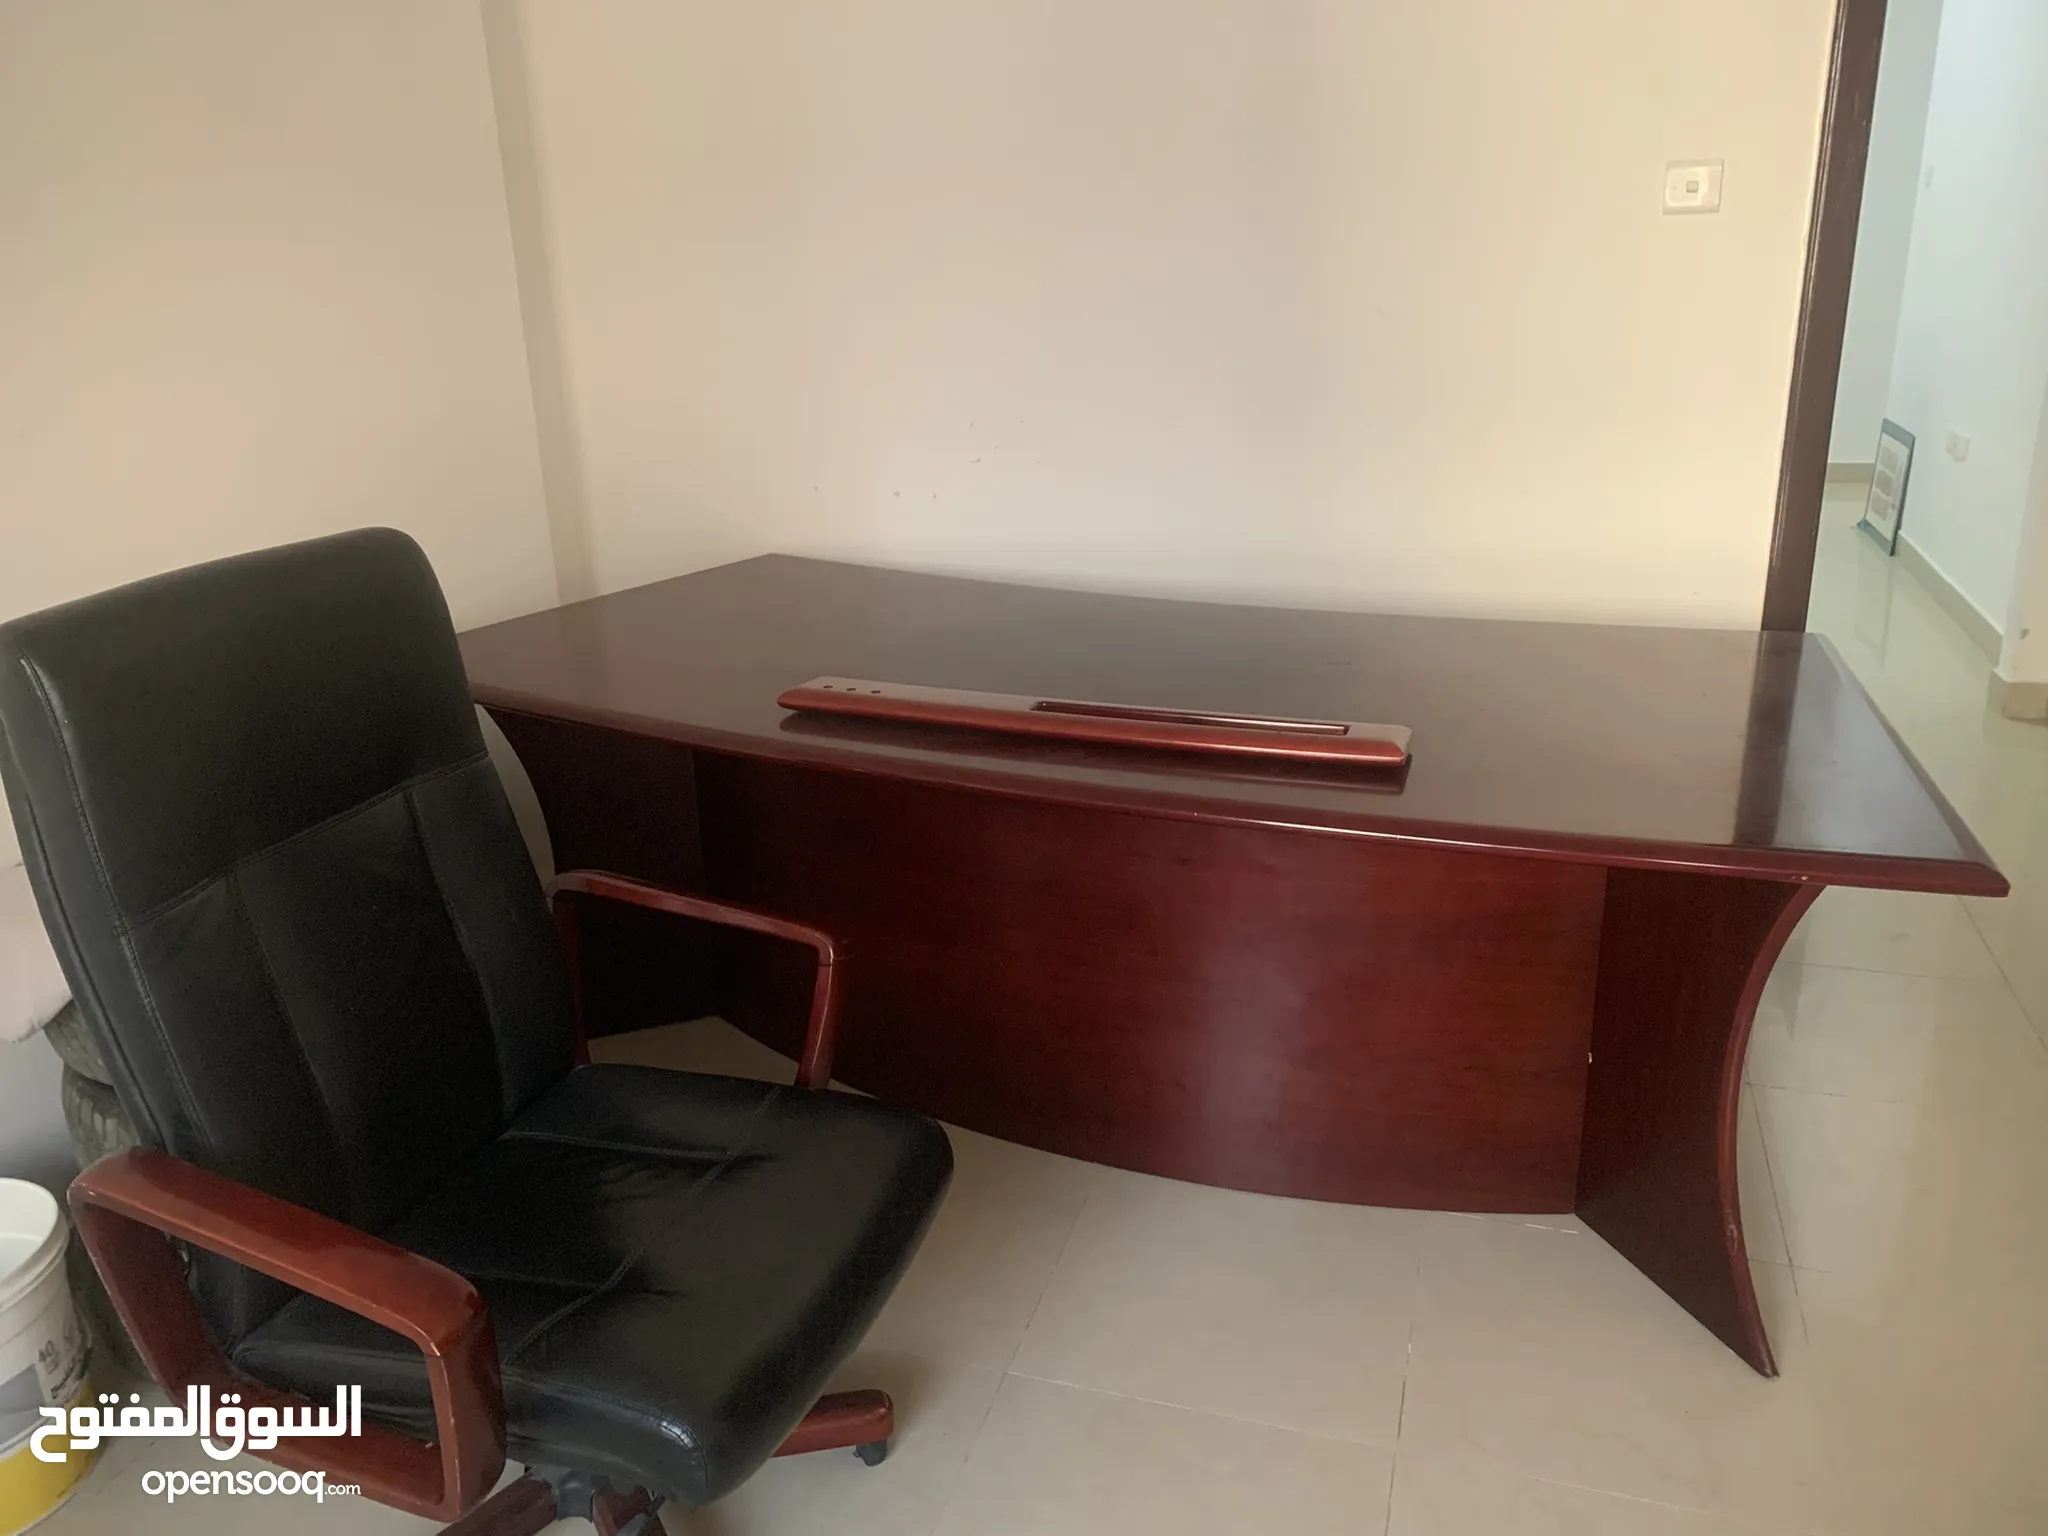 اثاث مكاتب للبيع : اثاث مكتبي : طاولات وكراسي : ارخص الاسعار في عجمان |  السوق المفتوح